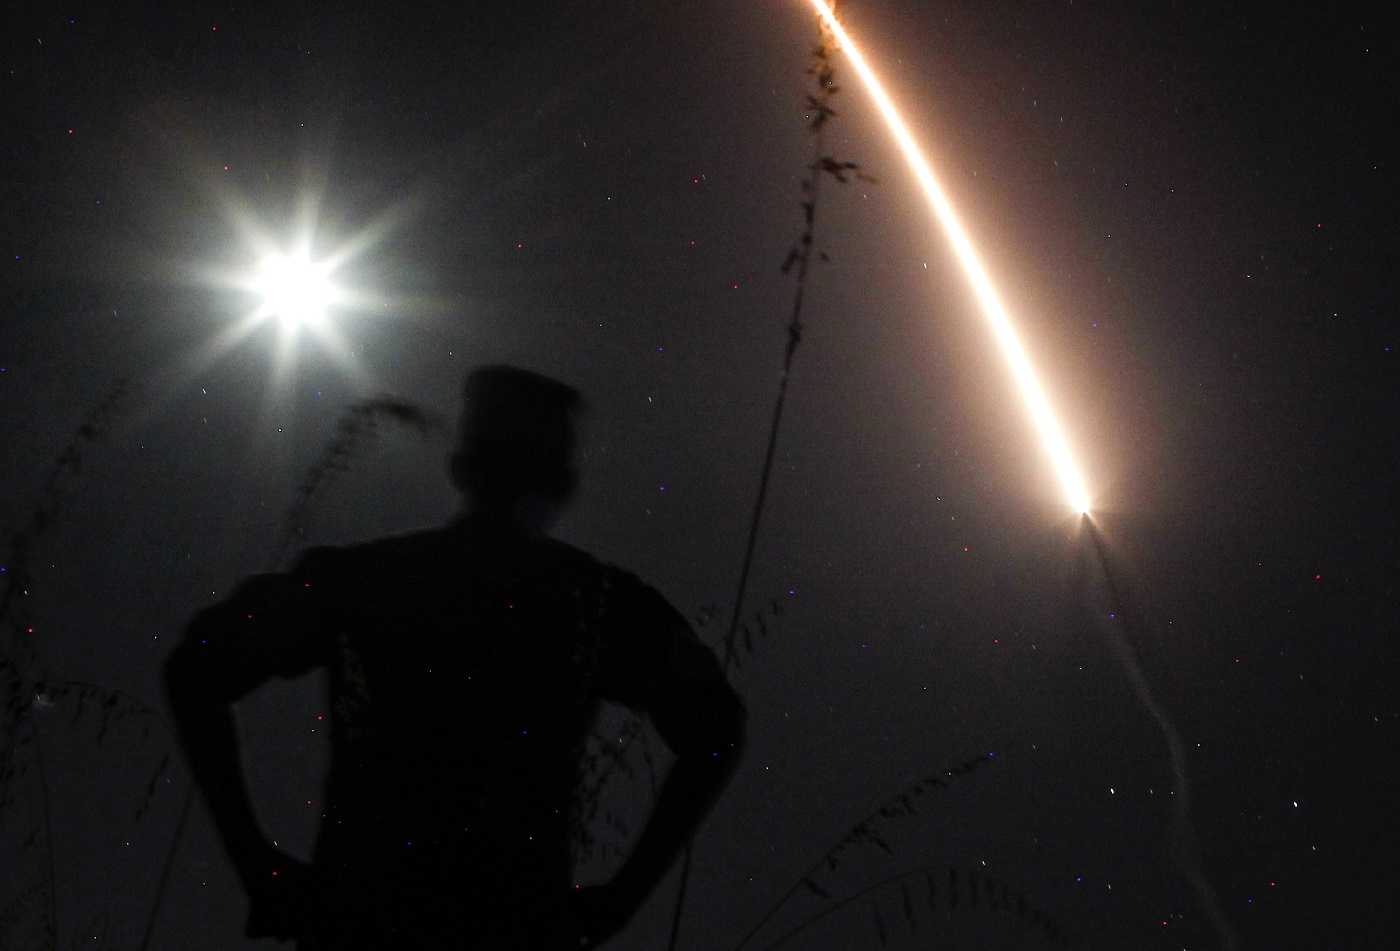 EEUU realizó el lanzamiento de un misil balístico intercontinental (Fotos)